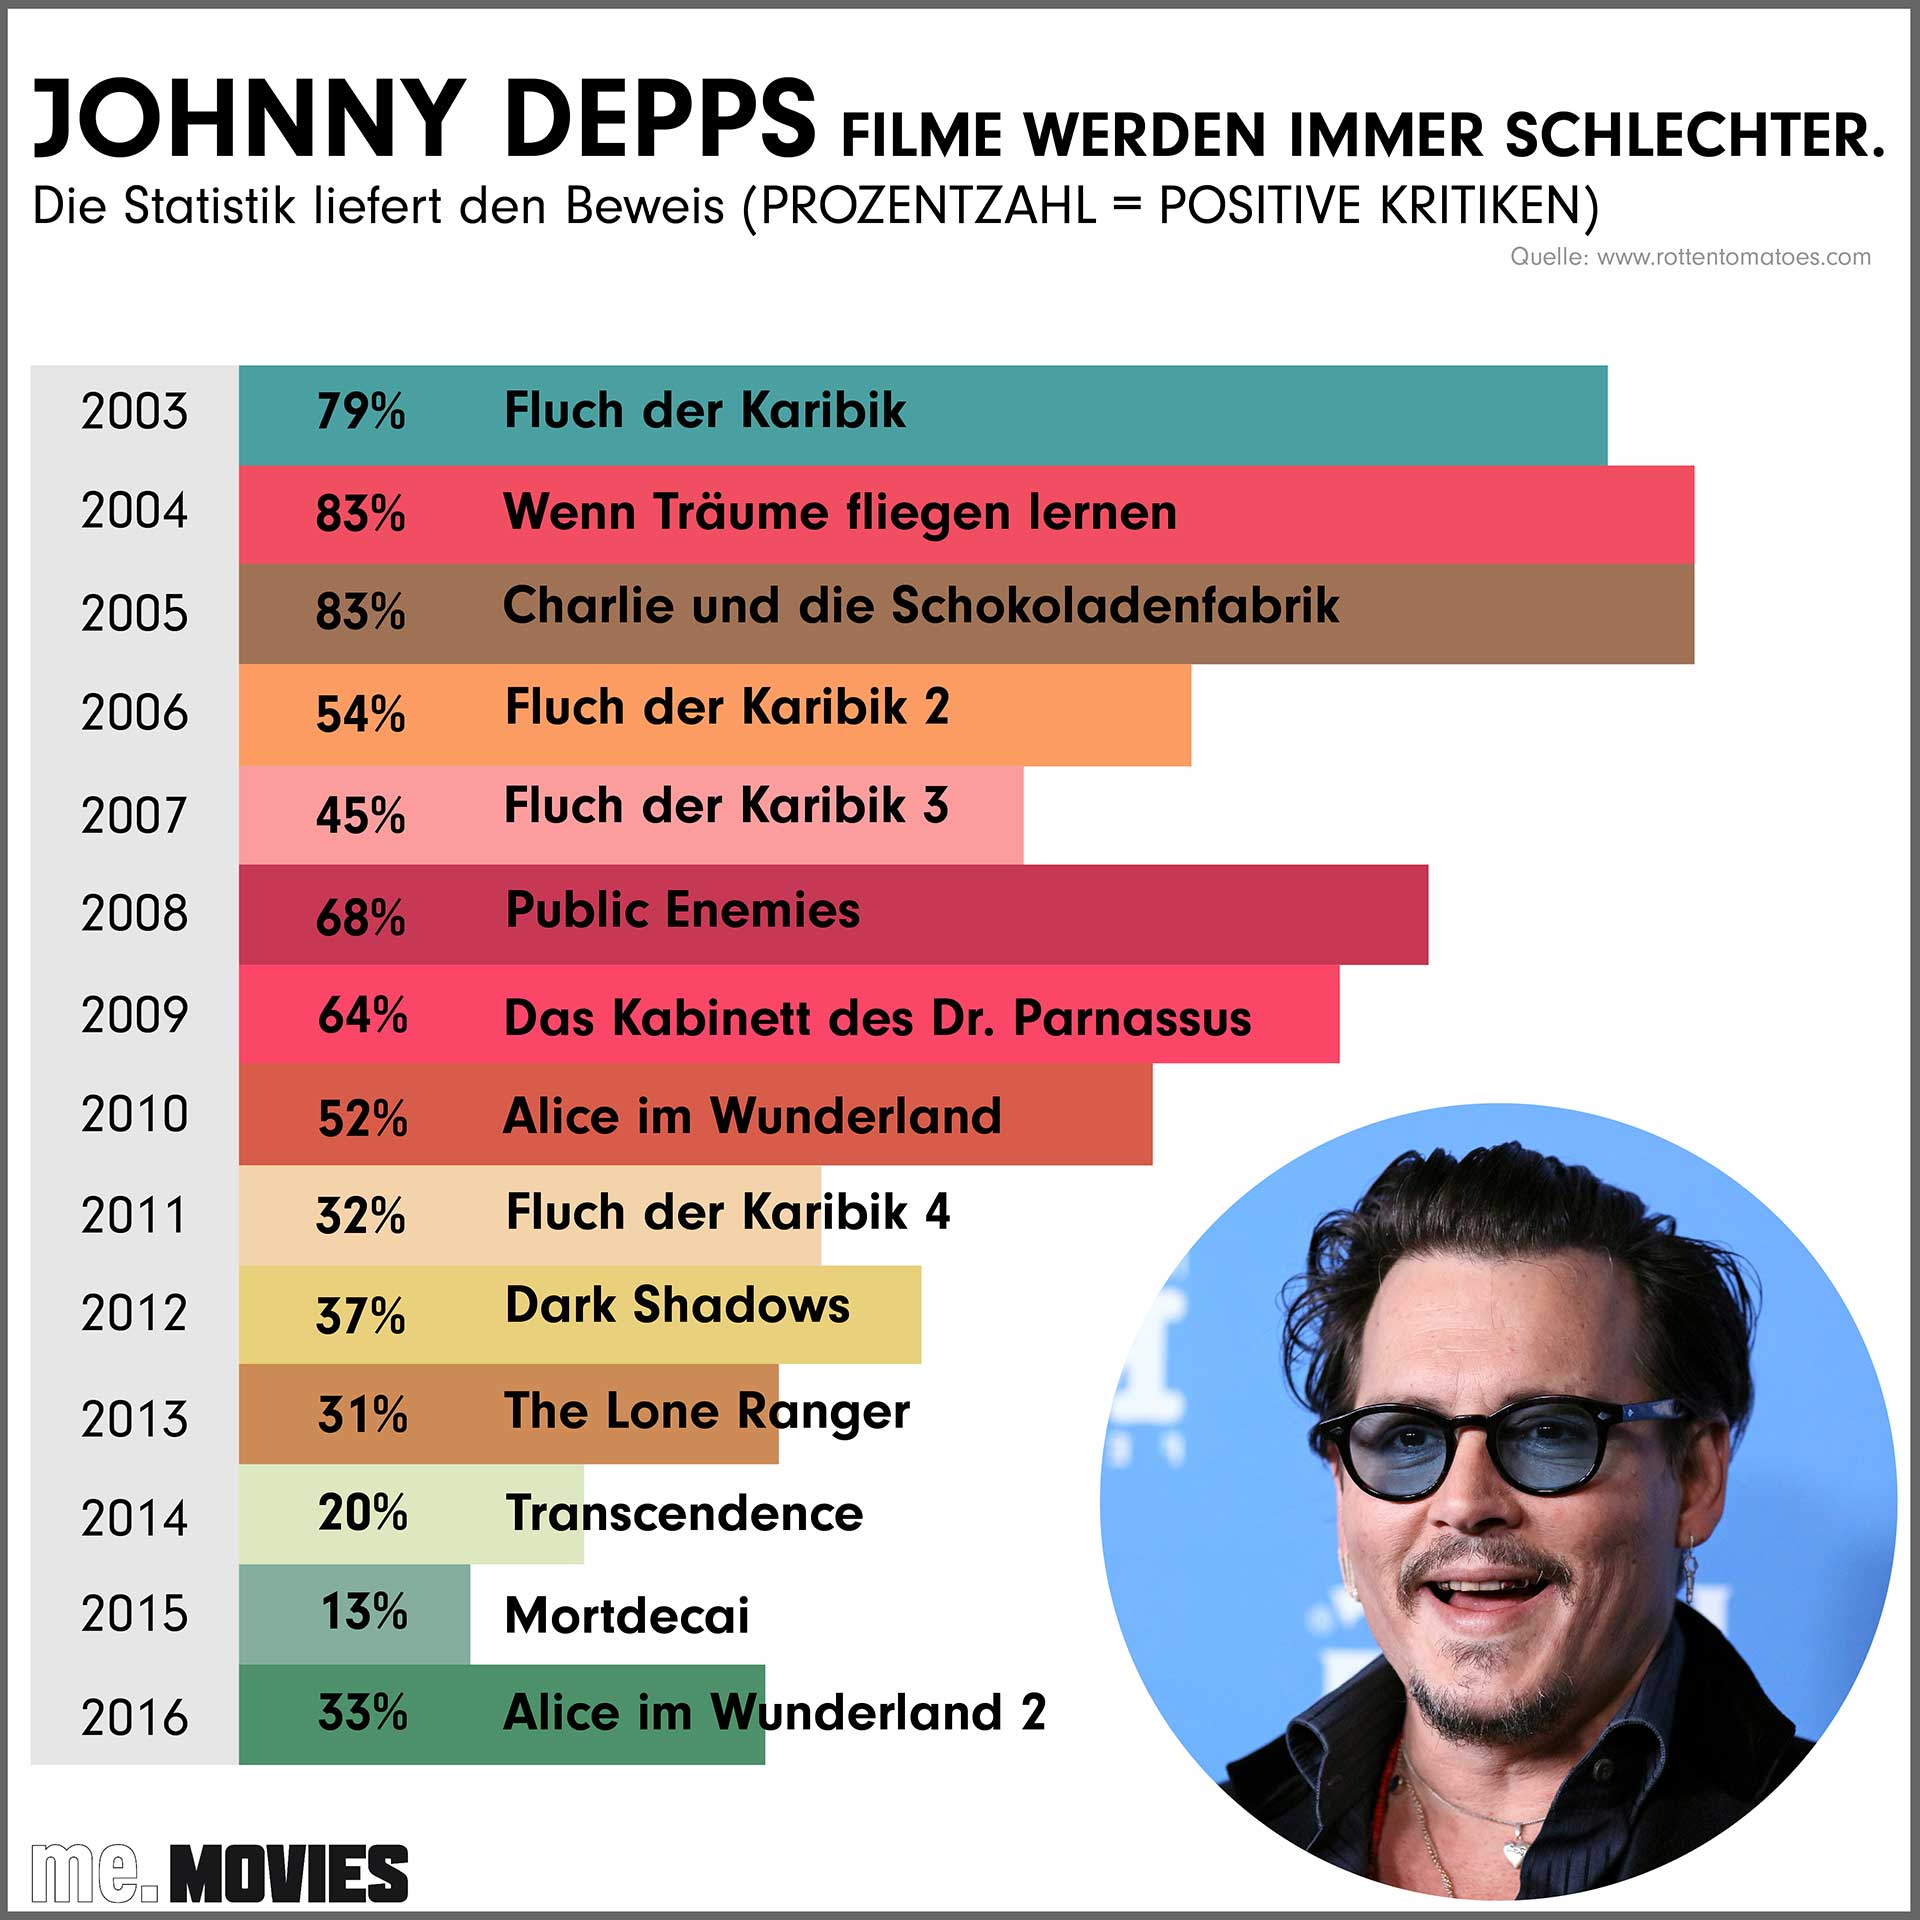 Der Beweis: Die Filme von Johnny Depp werden immer schlechter.